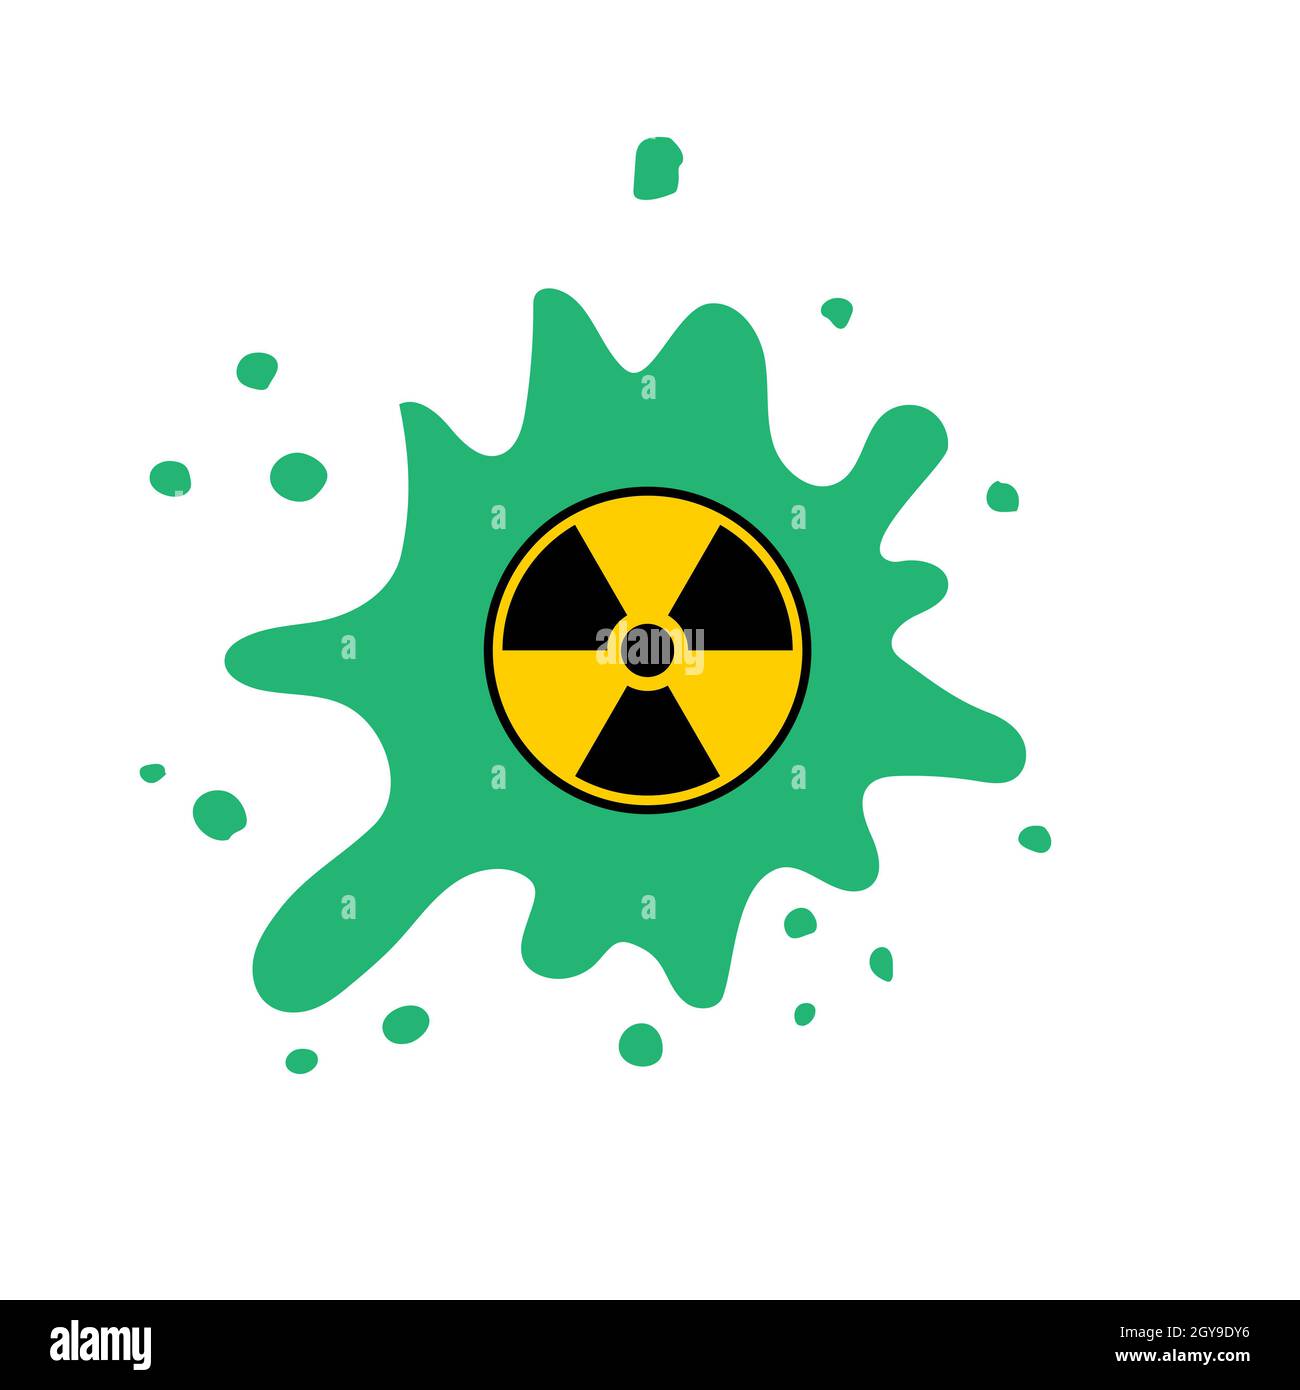 Ionizing Radiation Sign. Radioactive Contamination Symbol. Warning Danger Hazard on White Background. Stock Photo